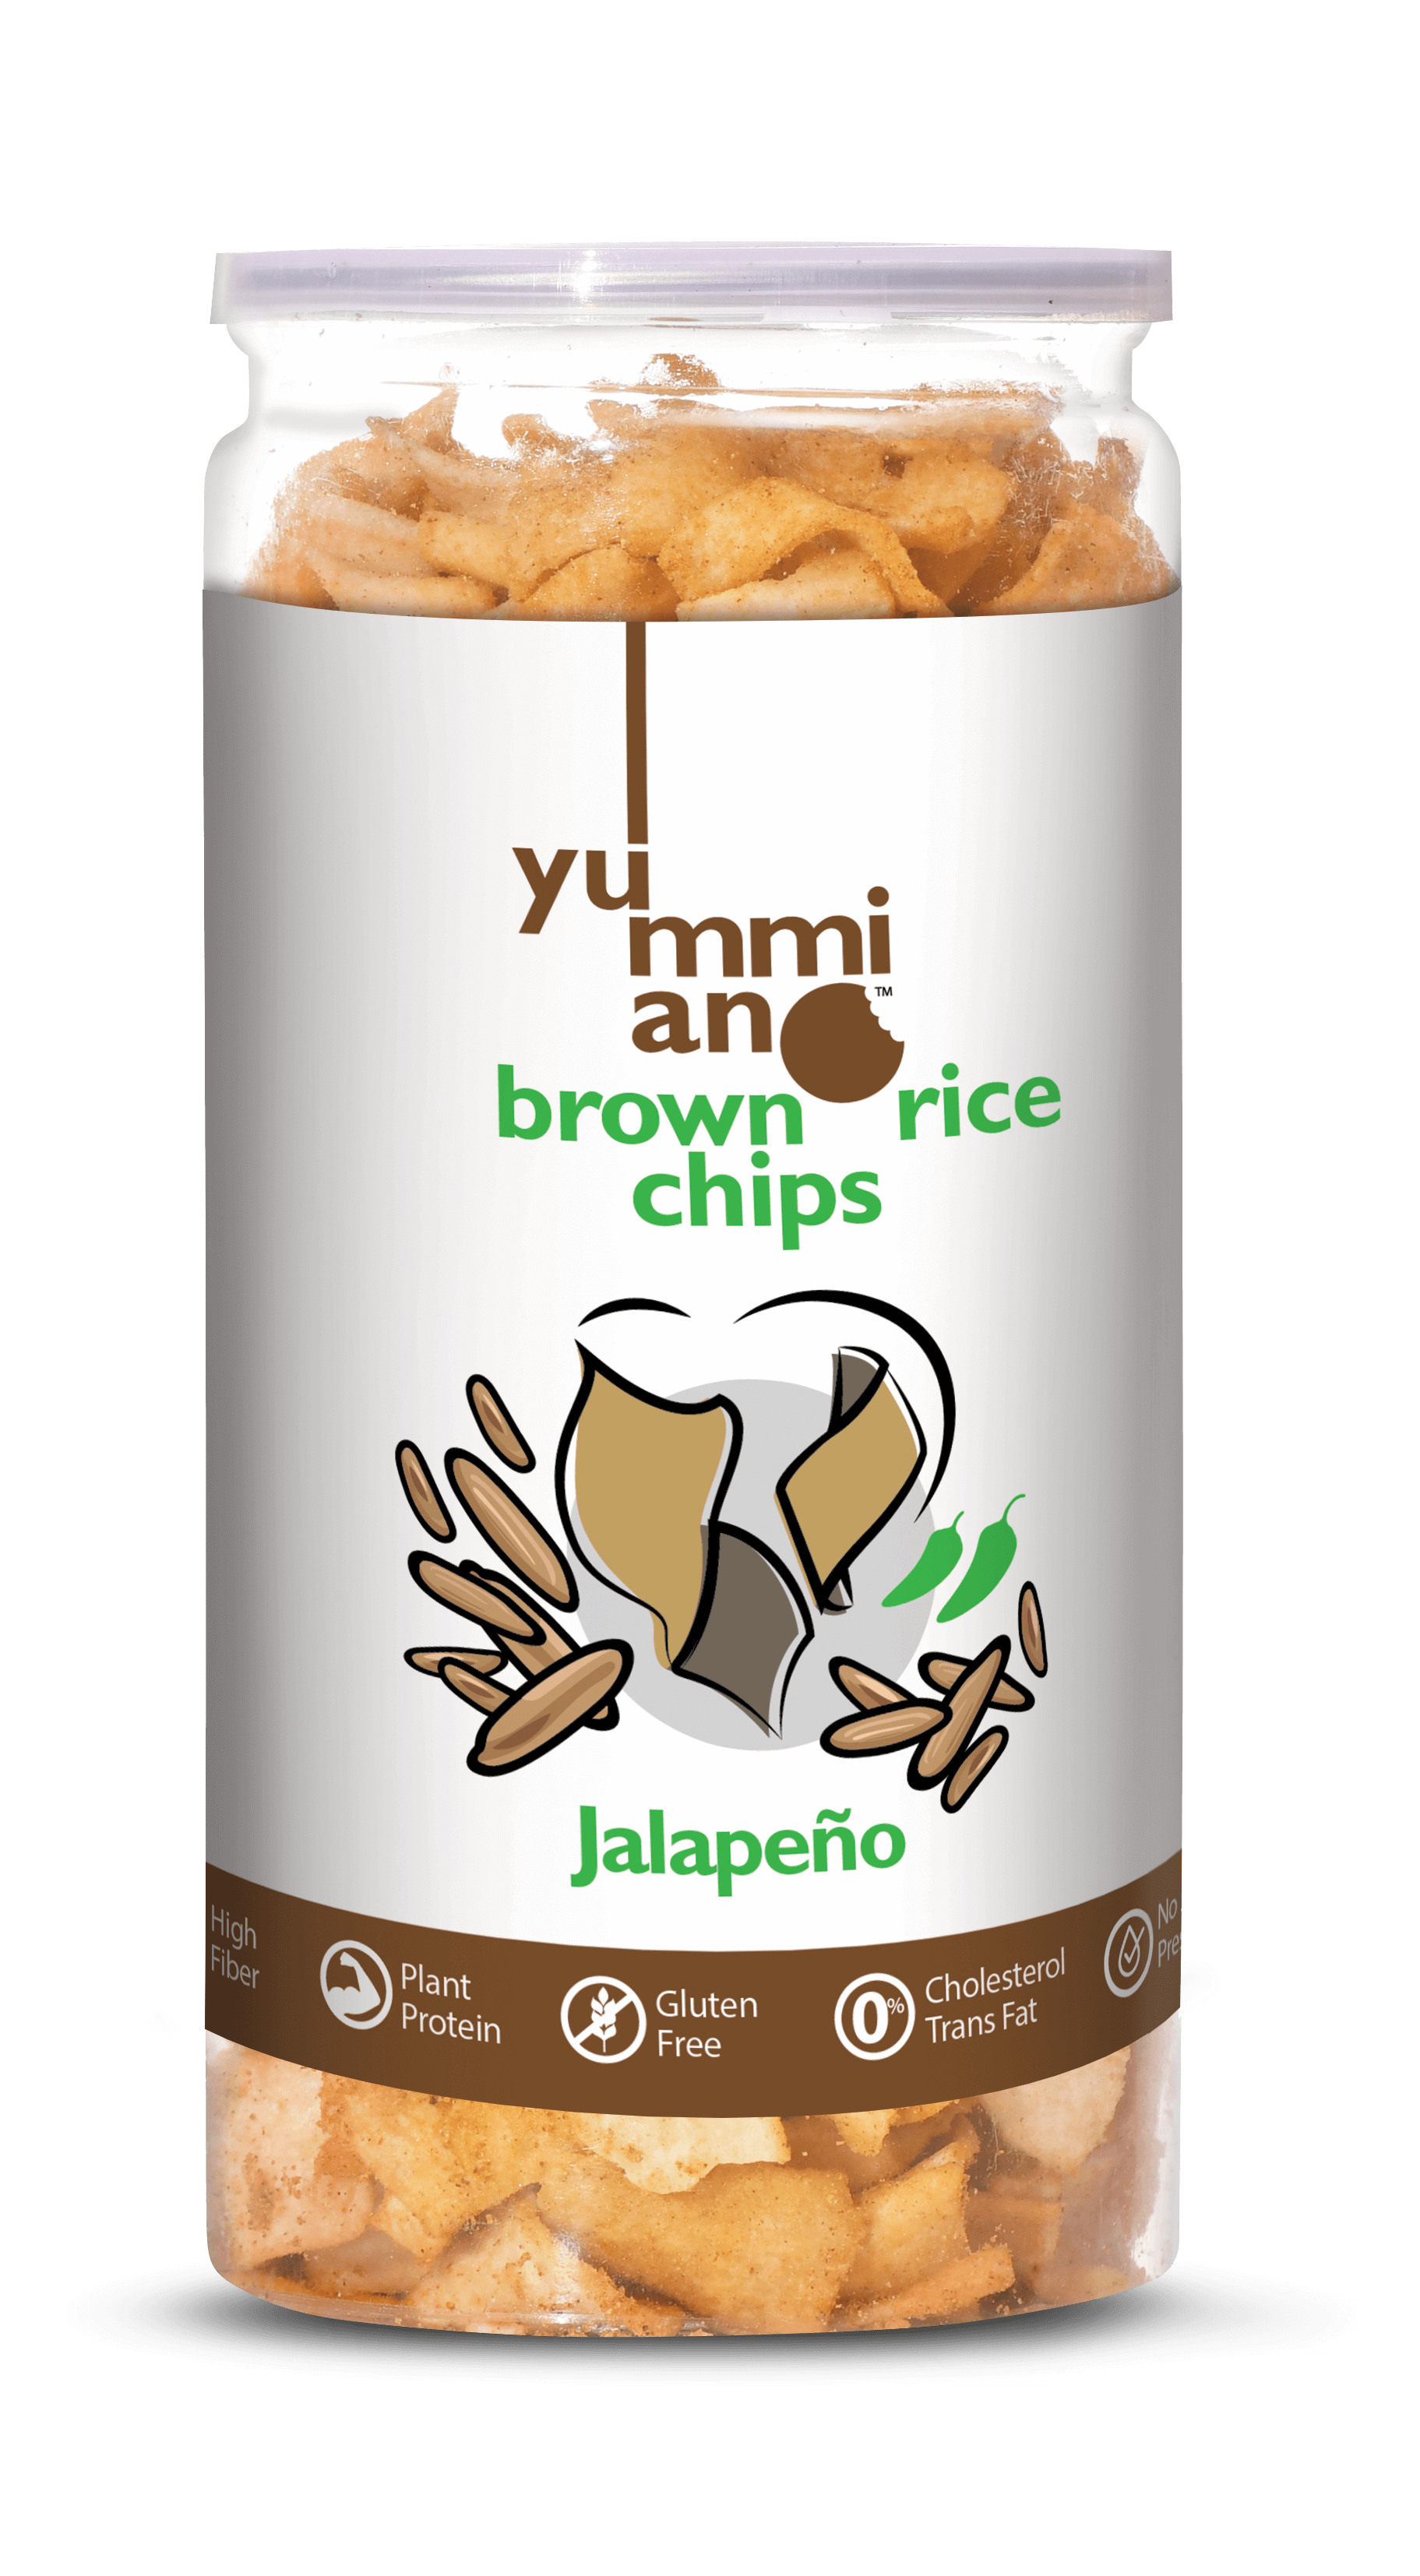 Yummiano Brown Rice Chips â€šÃ„Ã¶âˆšÃ‘âˆšÂ¨ Jalapeâ€šÃ Ã¶Â¬Â±o Image